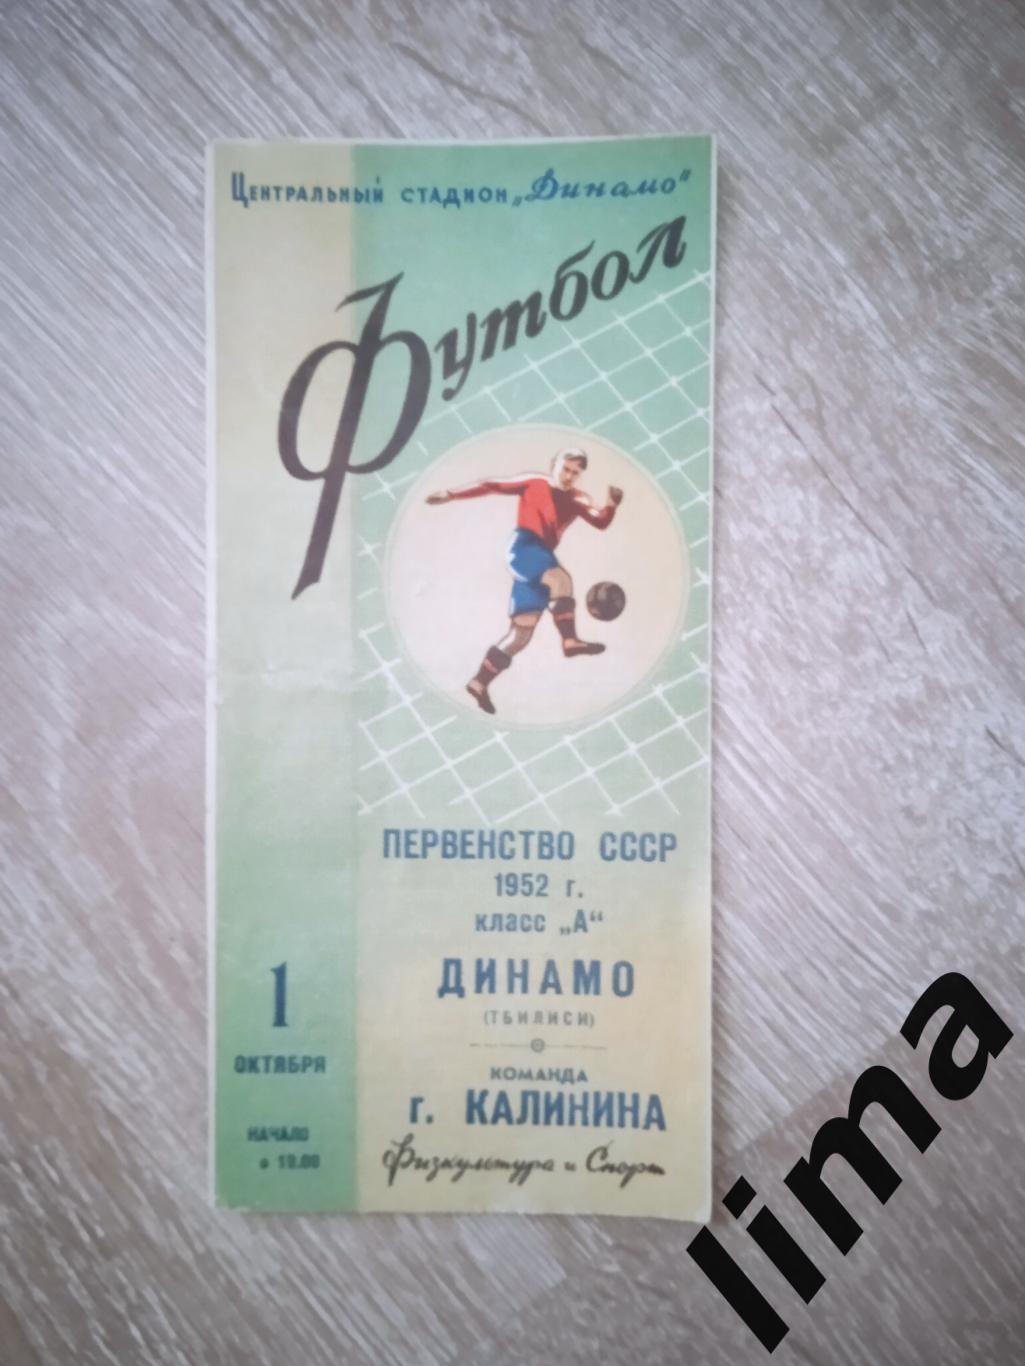 Программа Динамо Тбилиси - Команда города Калинин 1.10.1952